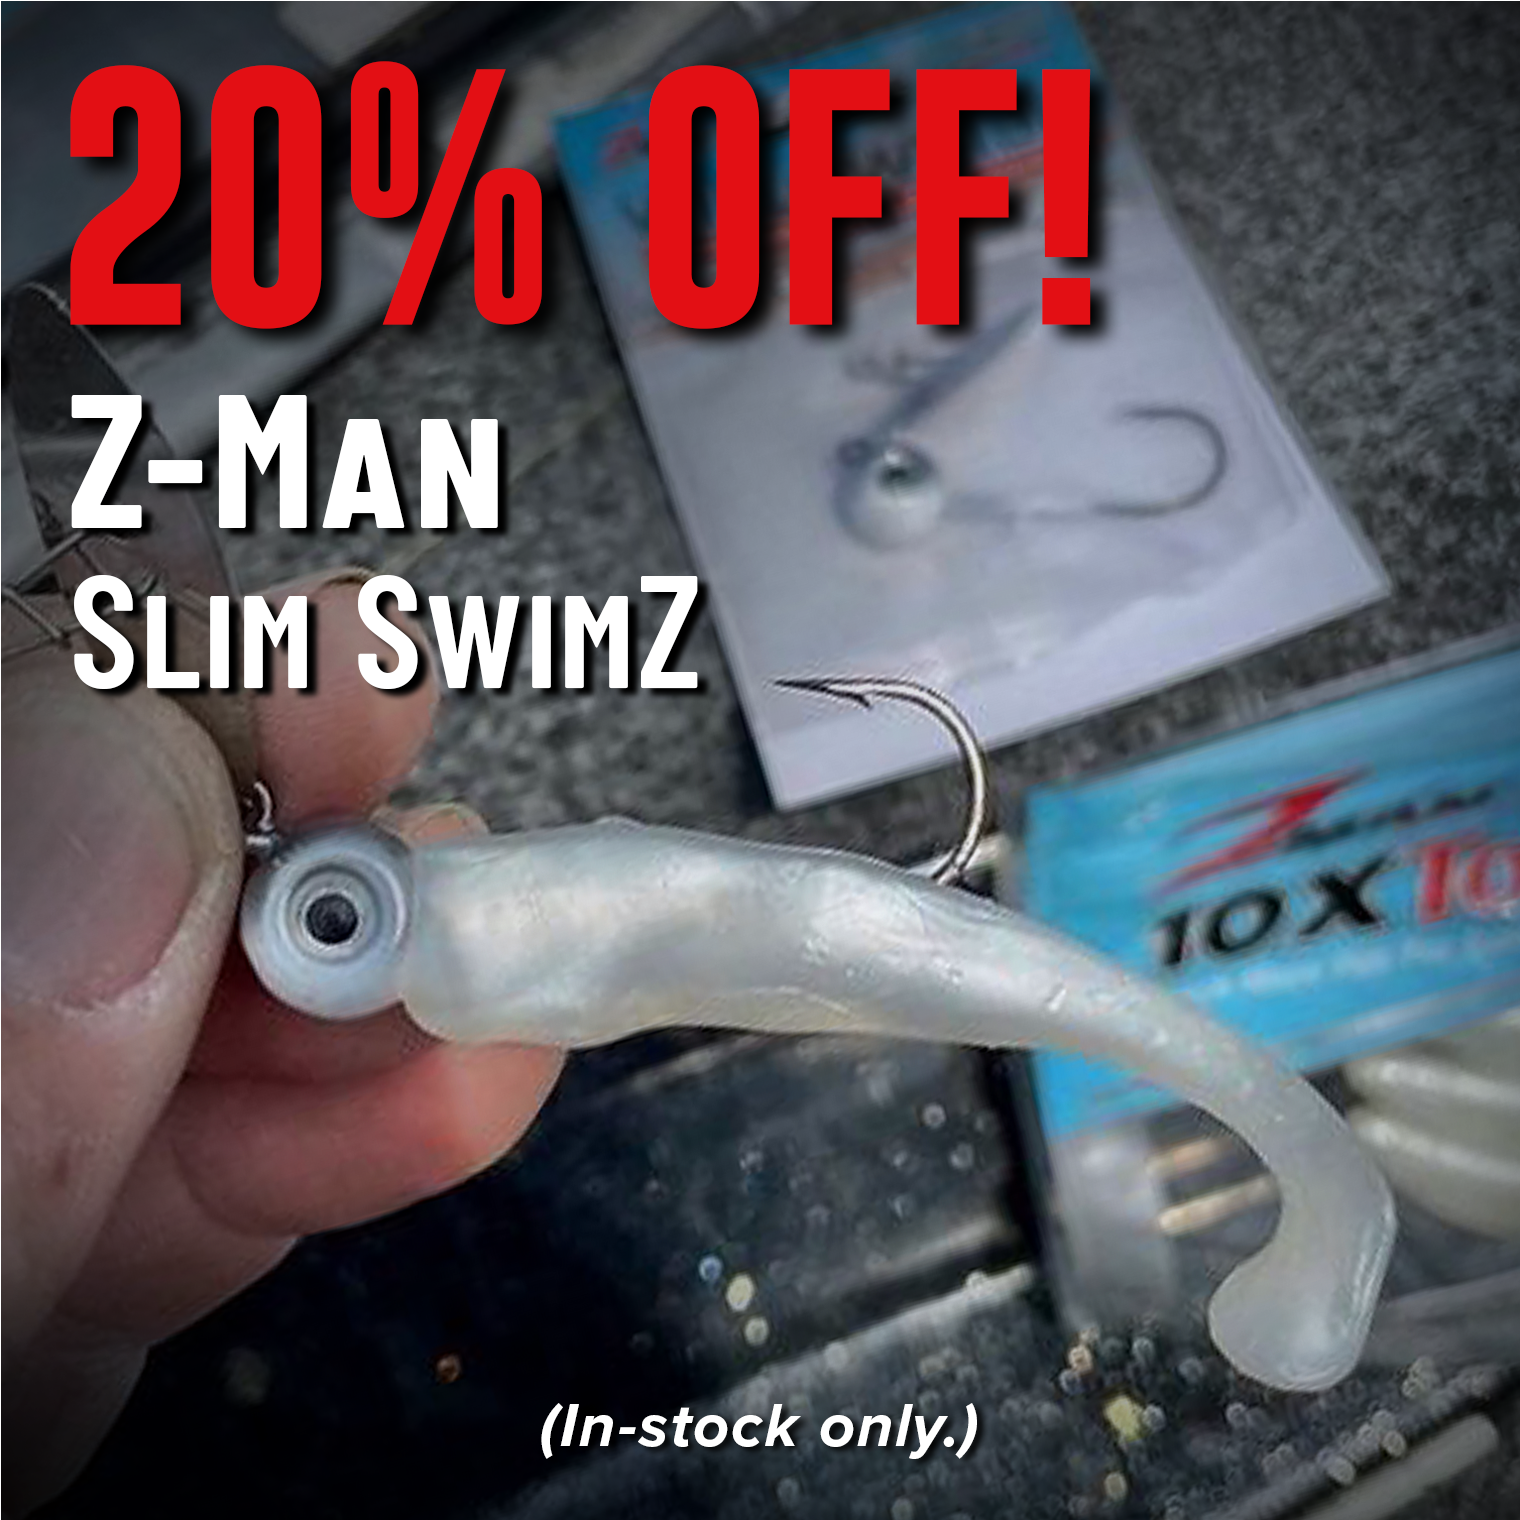 20% Off! Z-Man Slim SwimZ (In-stock only.)